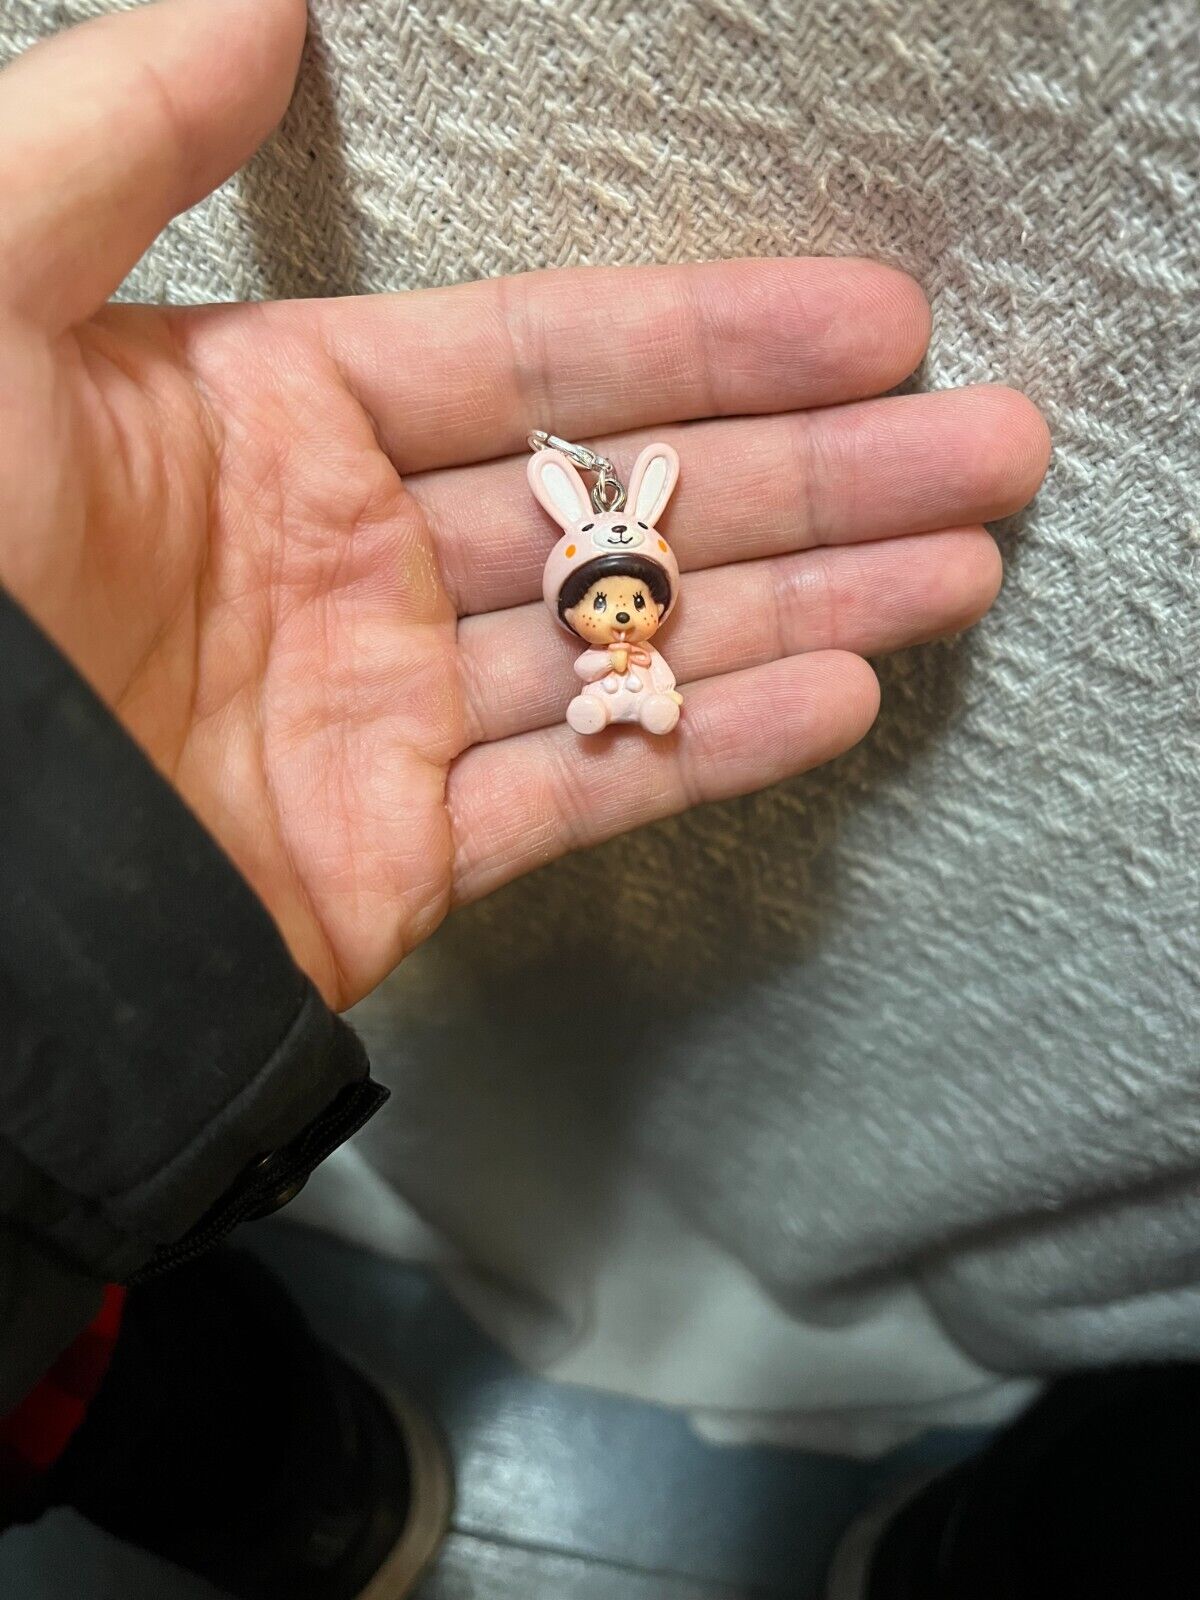 Monchhichi Mini Figure Charm Pink Rabbit